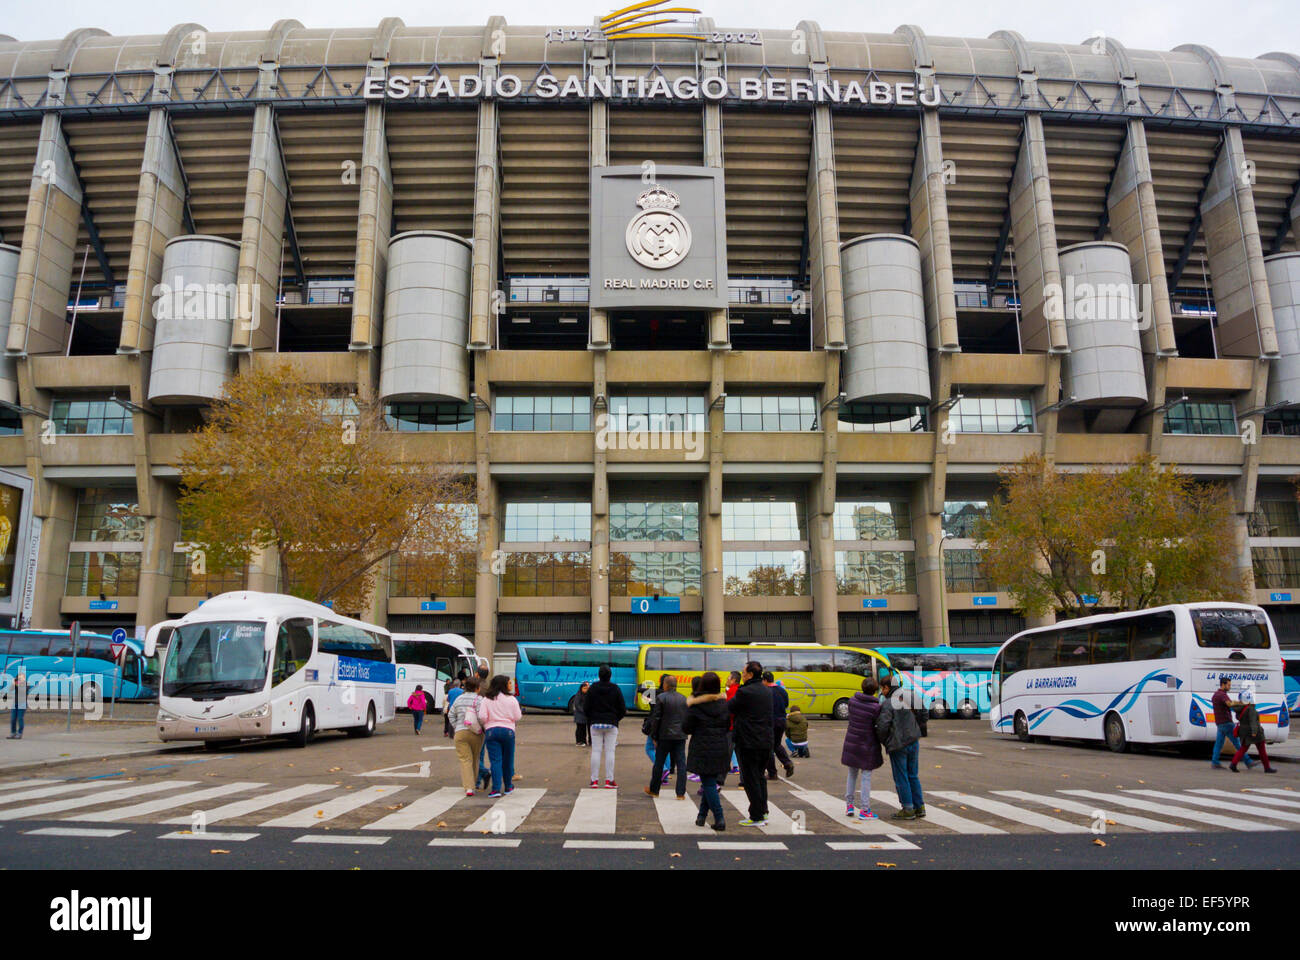 Estadio Santiago Bernabeu, stadium used by FC Real Madrid, Madrid, Spain Stock Photo